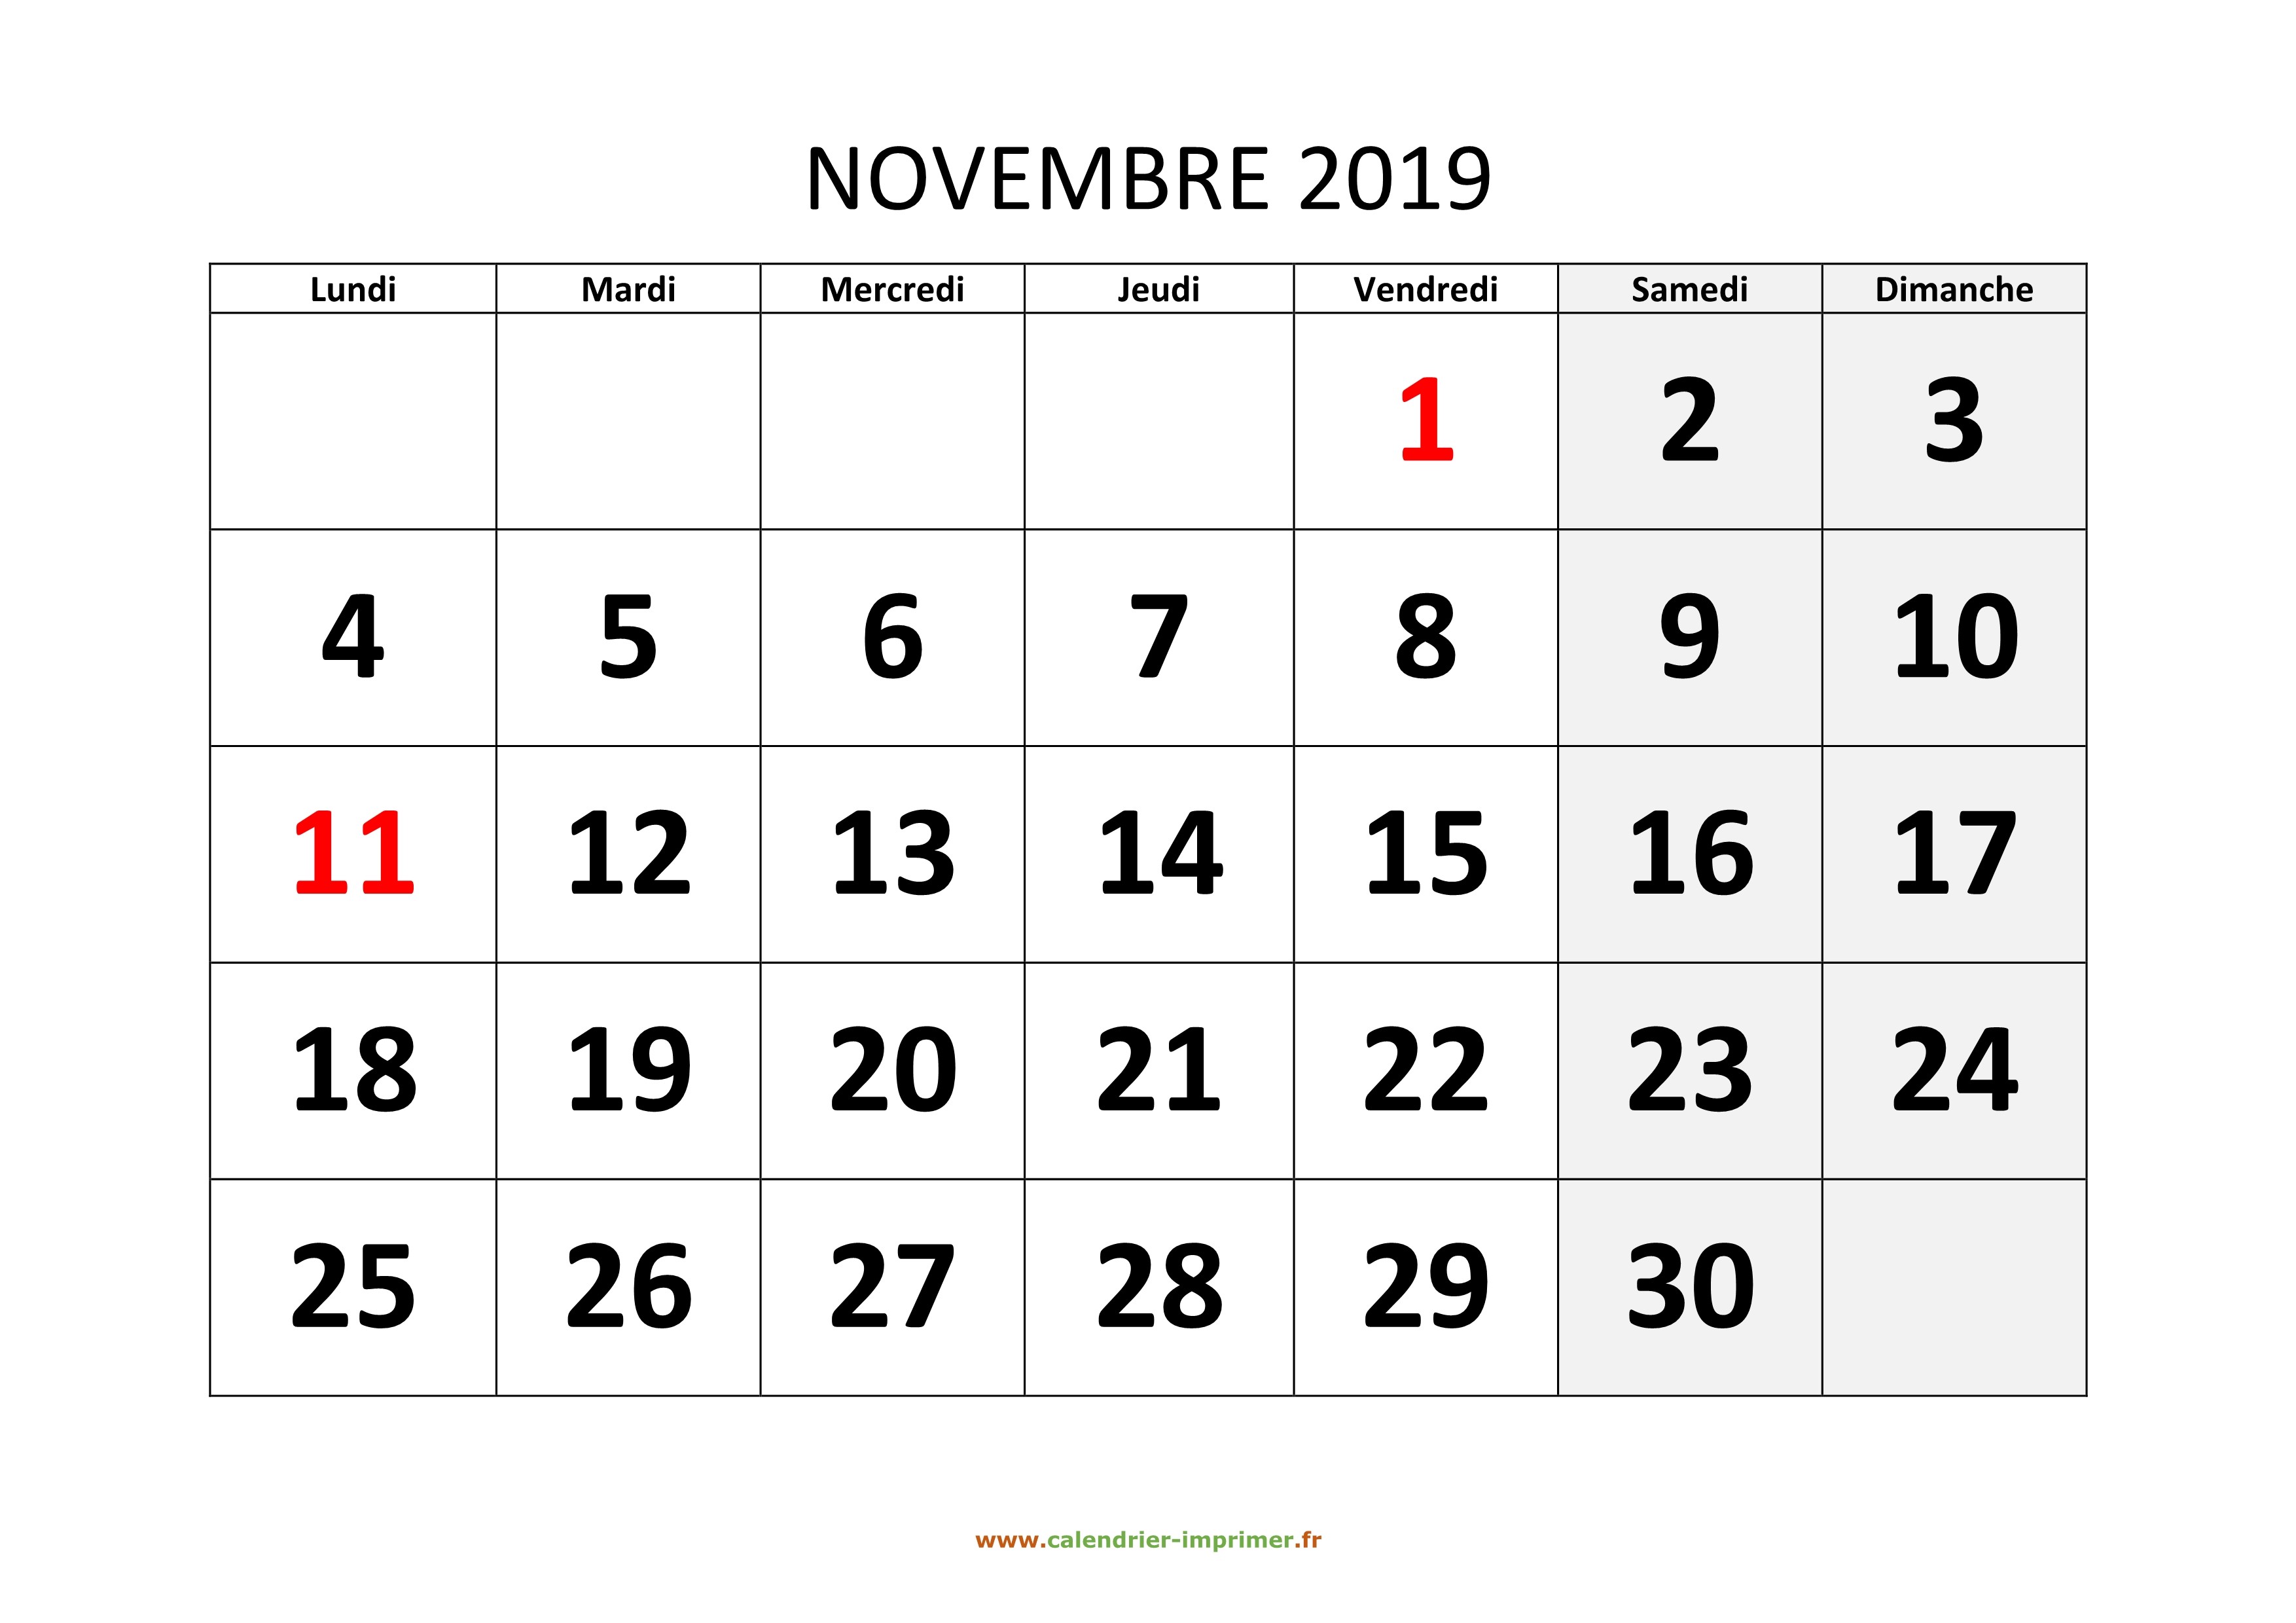 Calendrier 2019-2020 - Novembre 2019